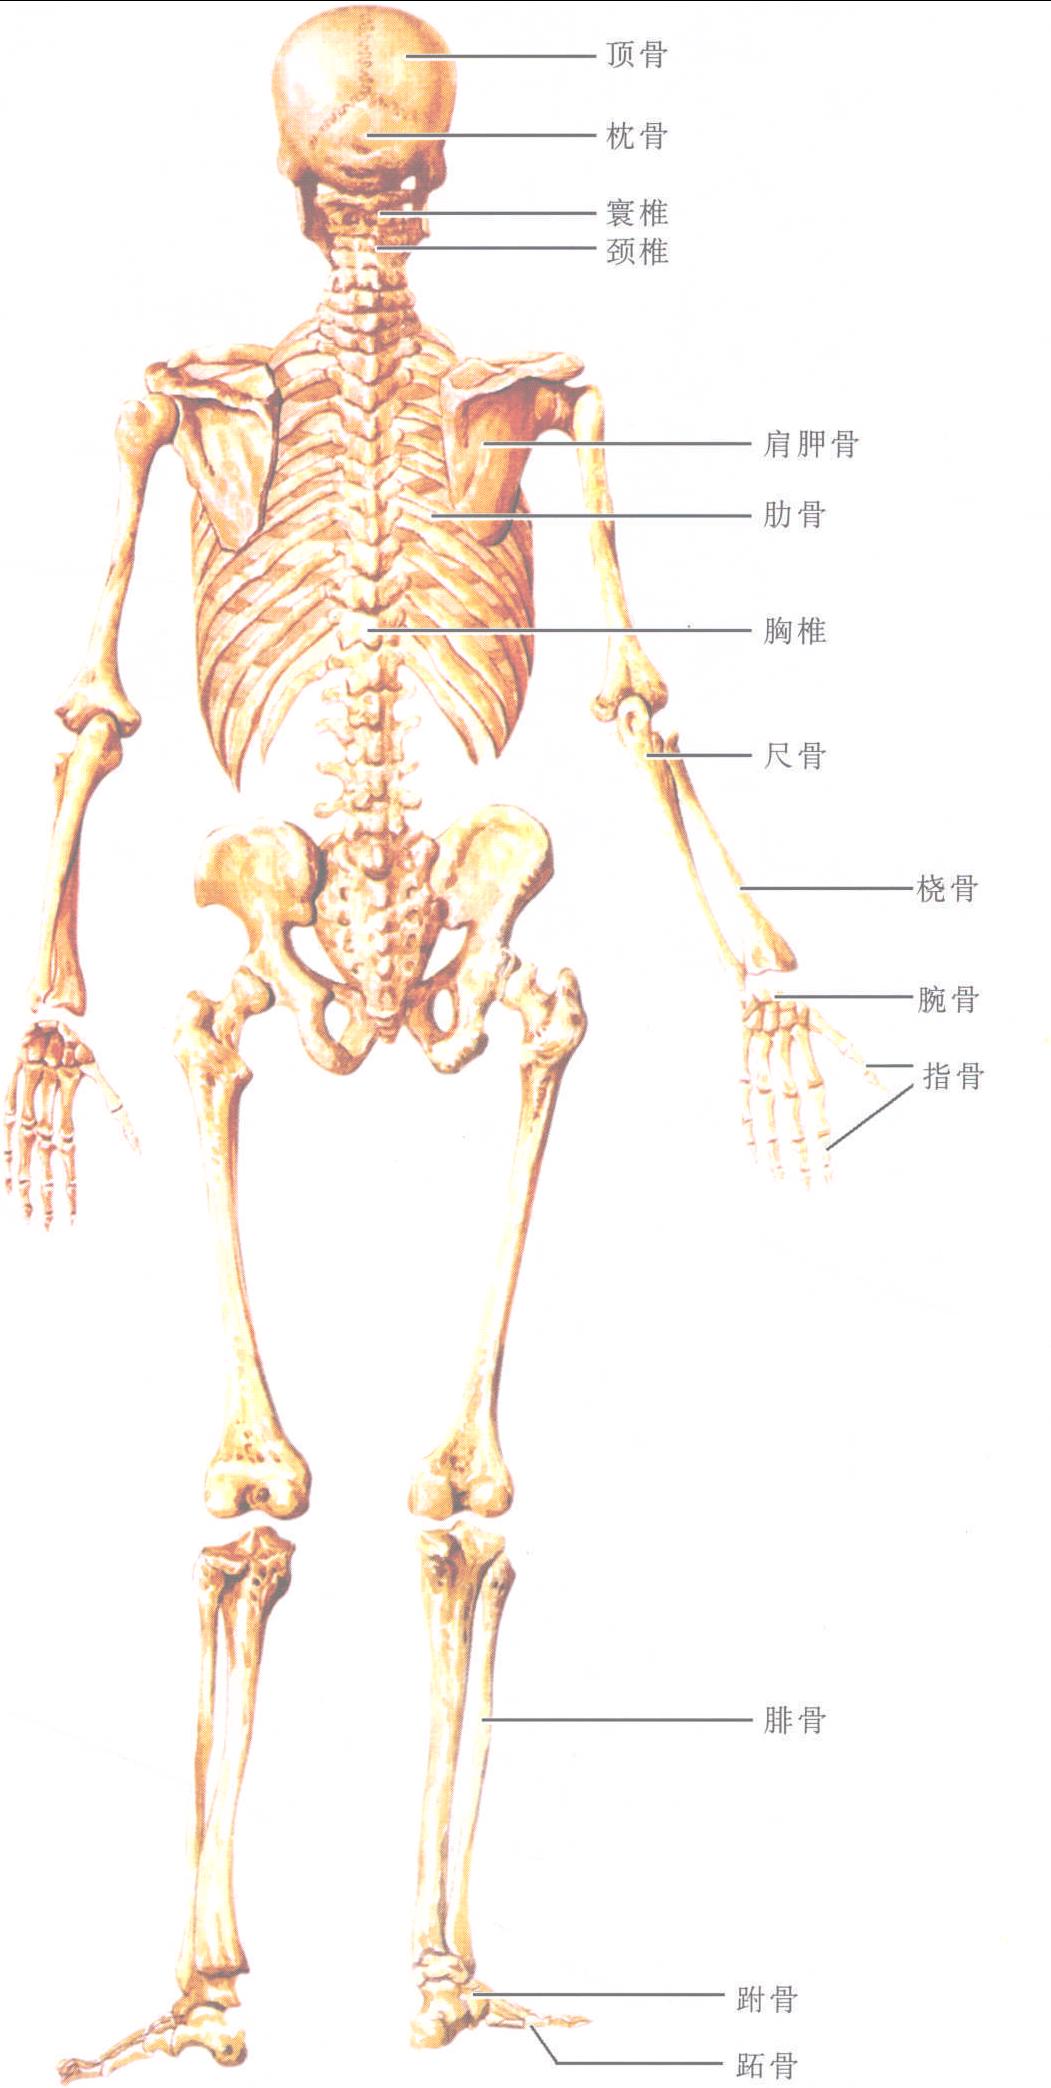 图1-1-1 全身骨骼